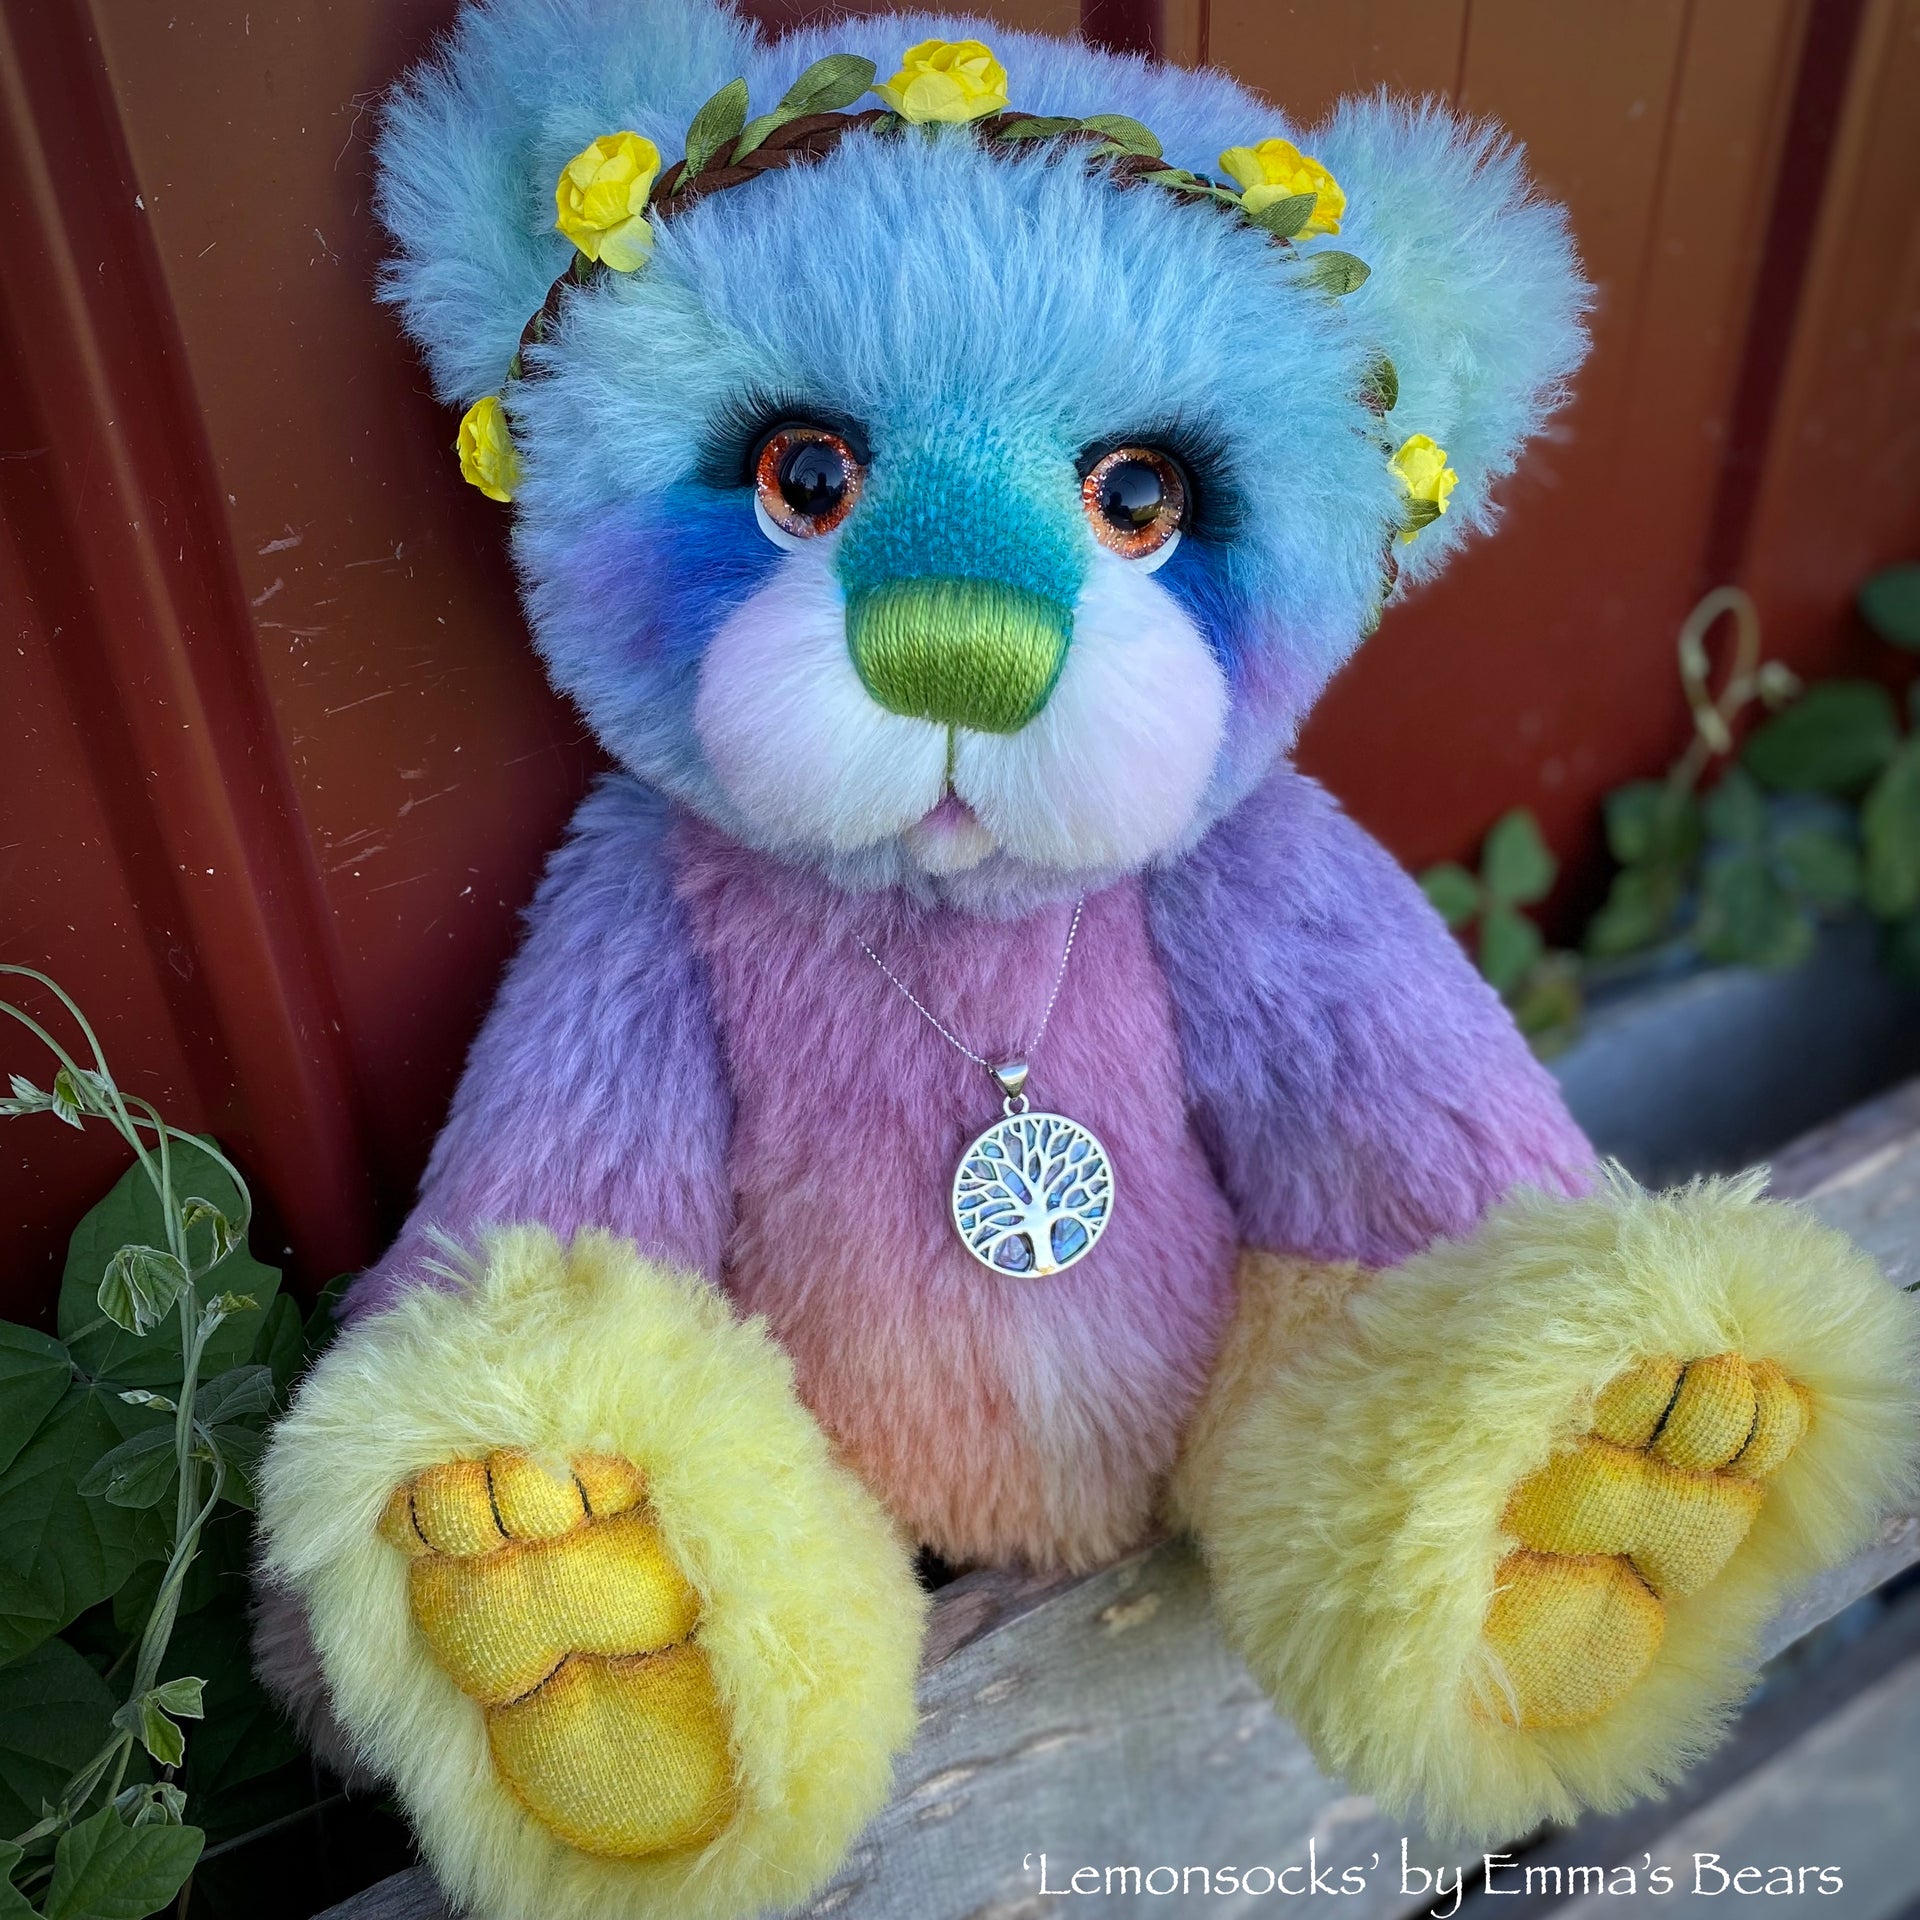 Lemonsocks - 16" Hand-Dyed Rainbow Bear by Emma's Bears - OOAK